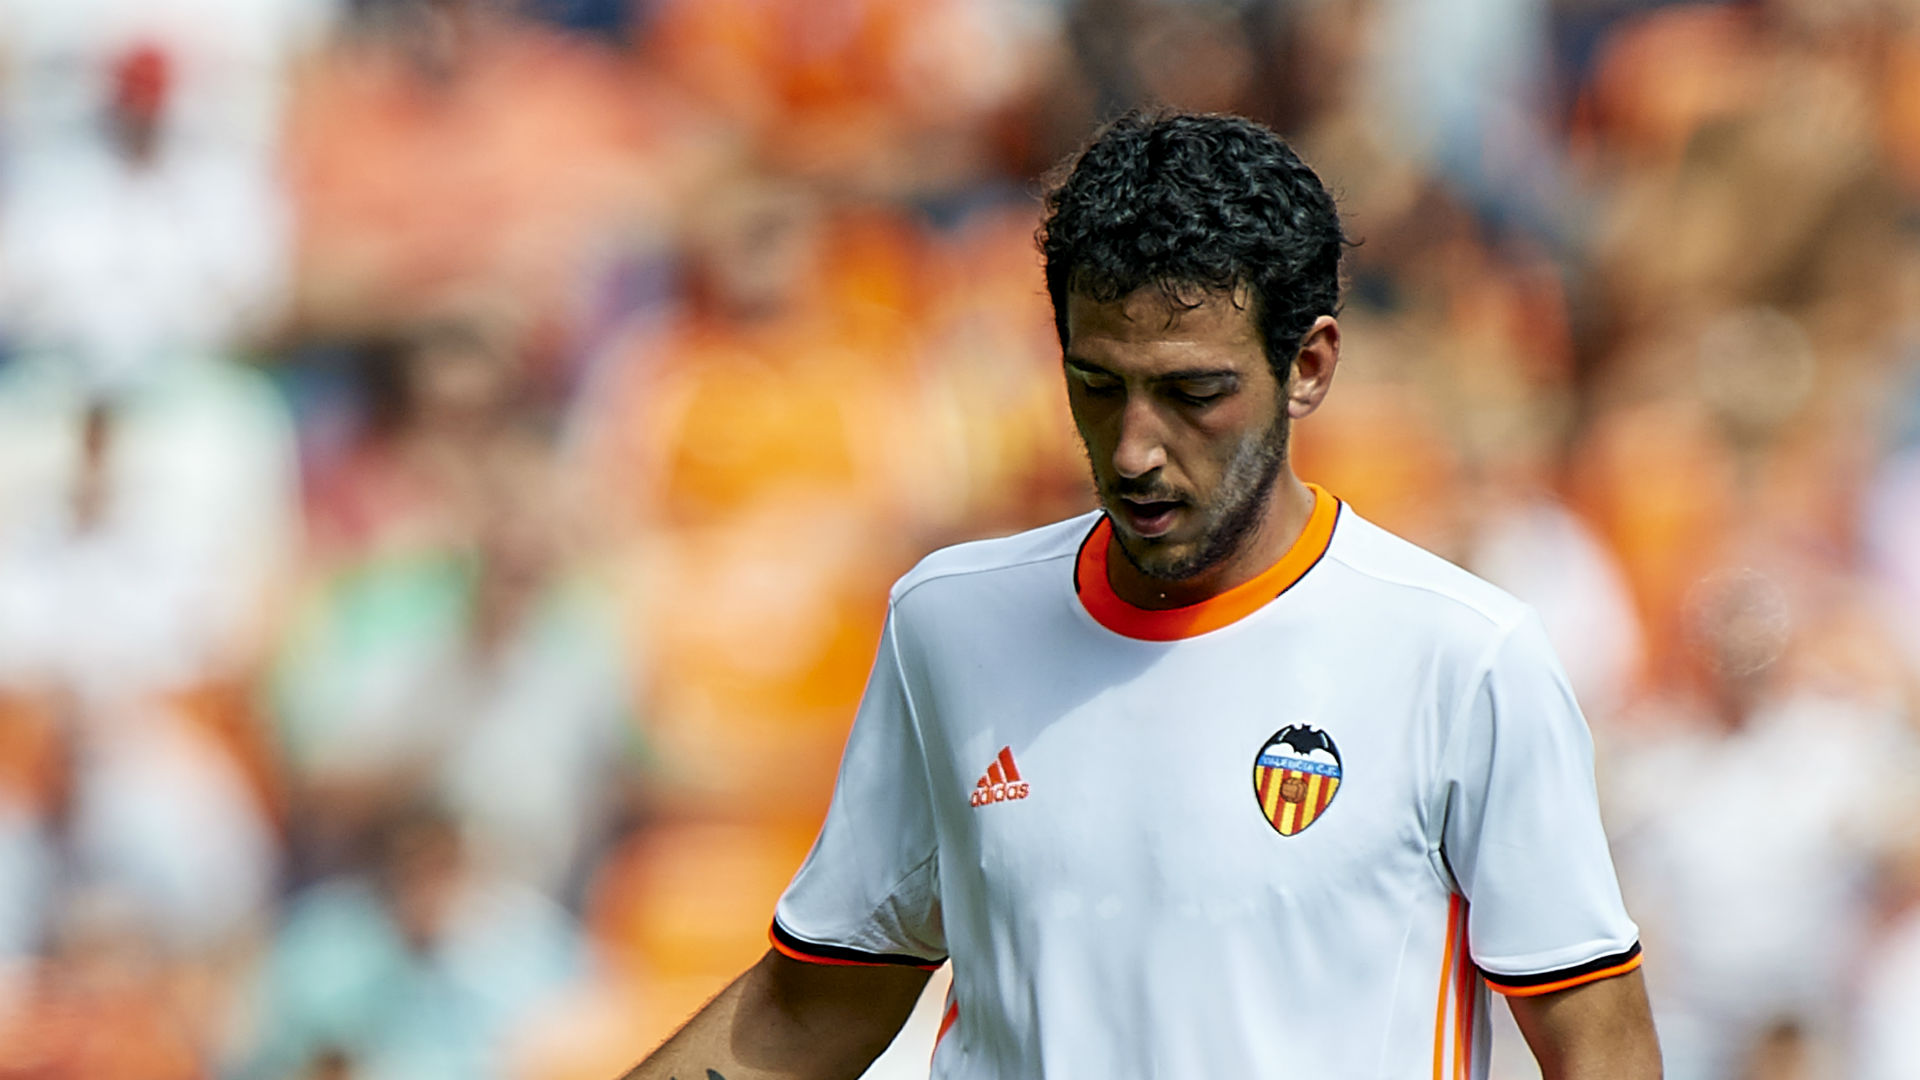 Valencia midfieler Parejo dropped over drunken video